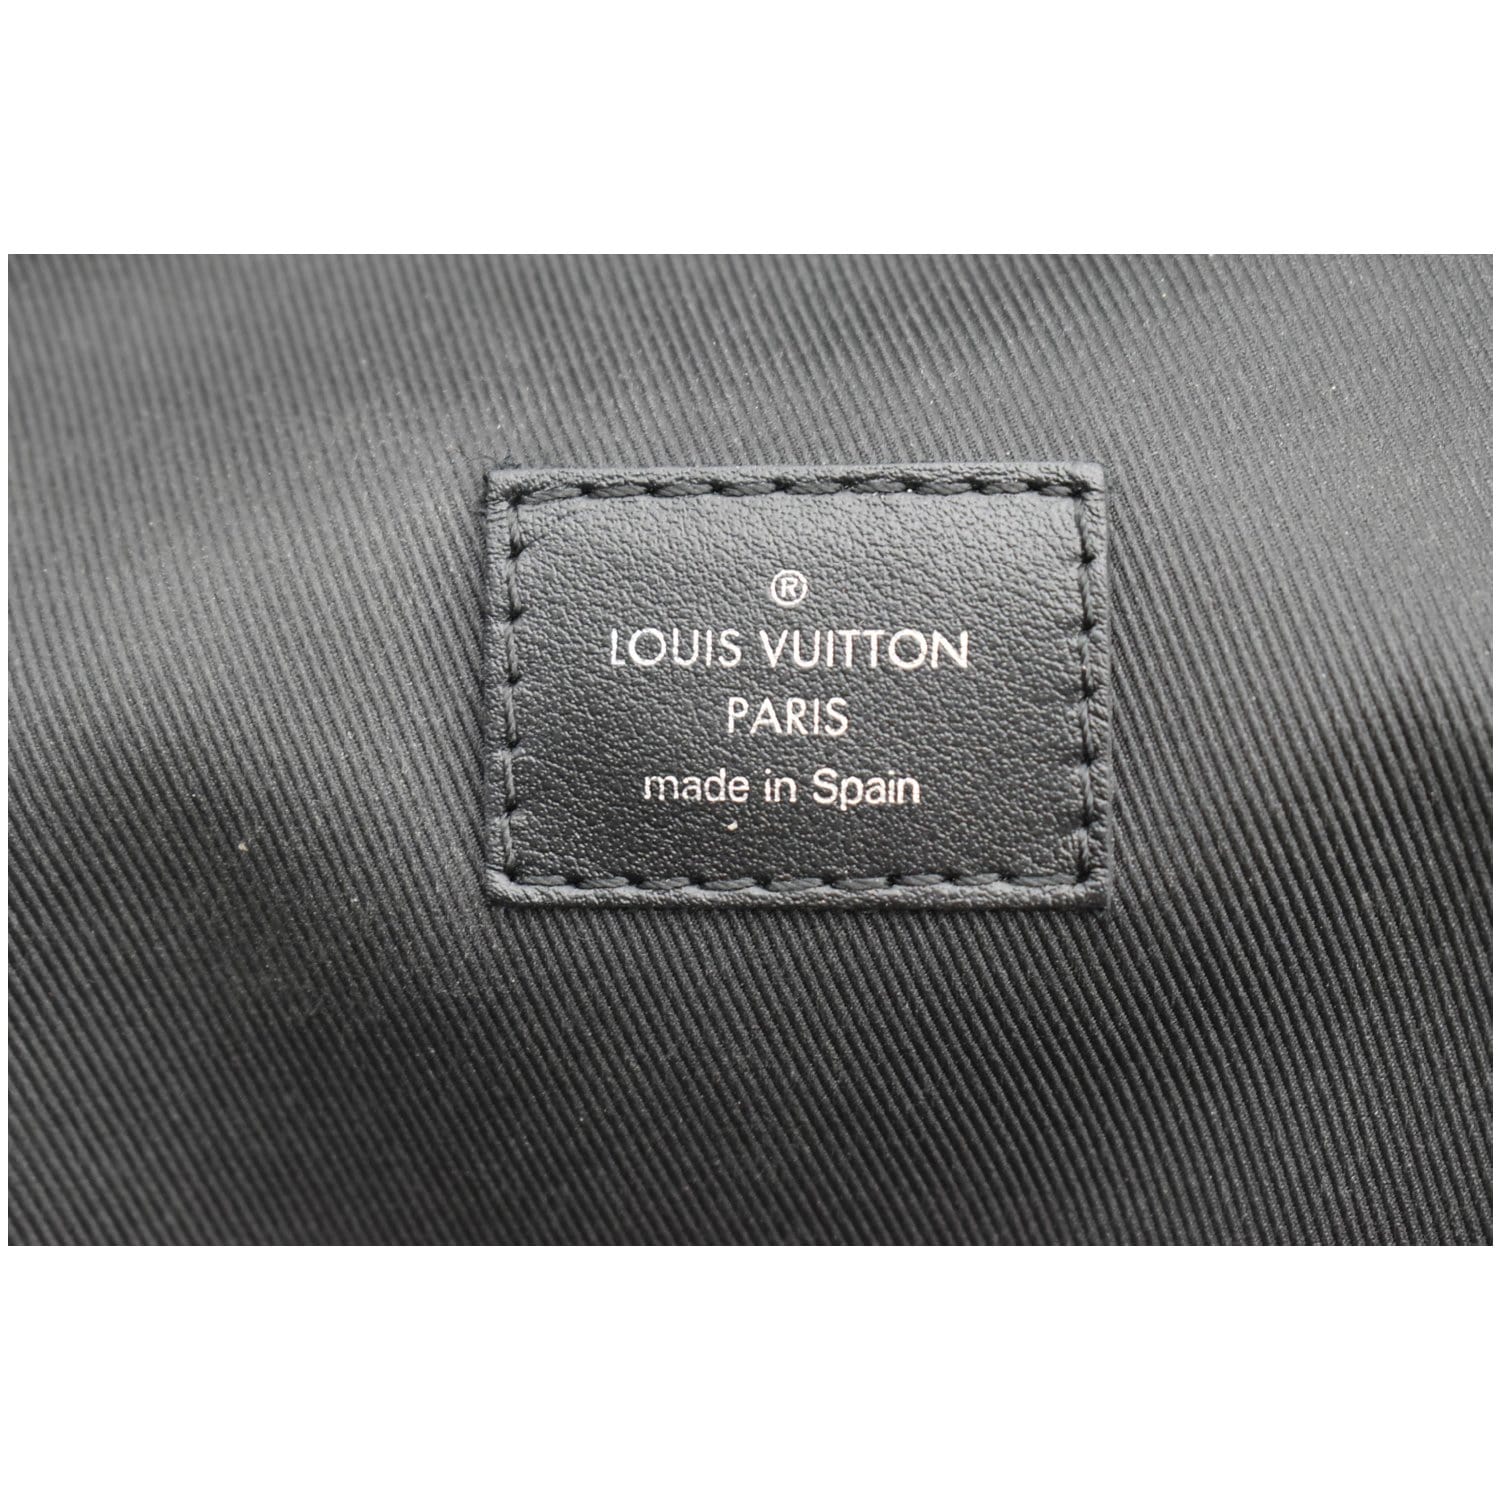 louis vuitton avenue sling bag dimensions